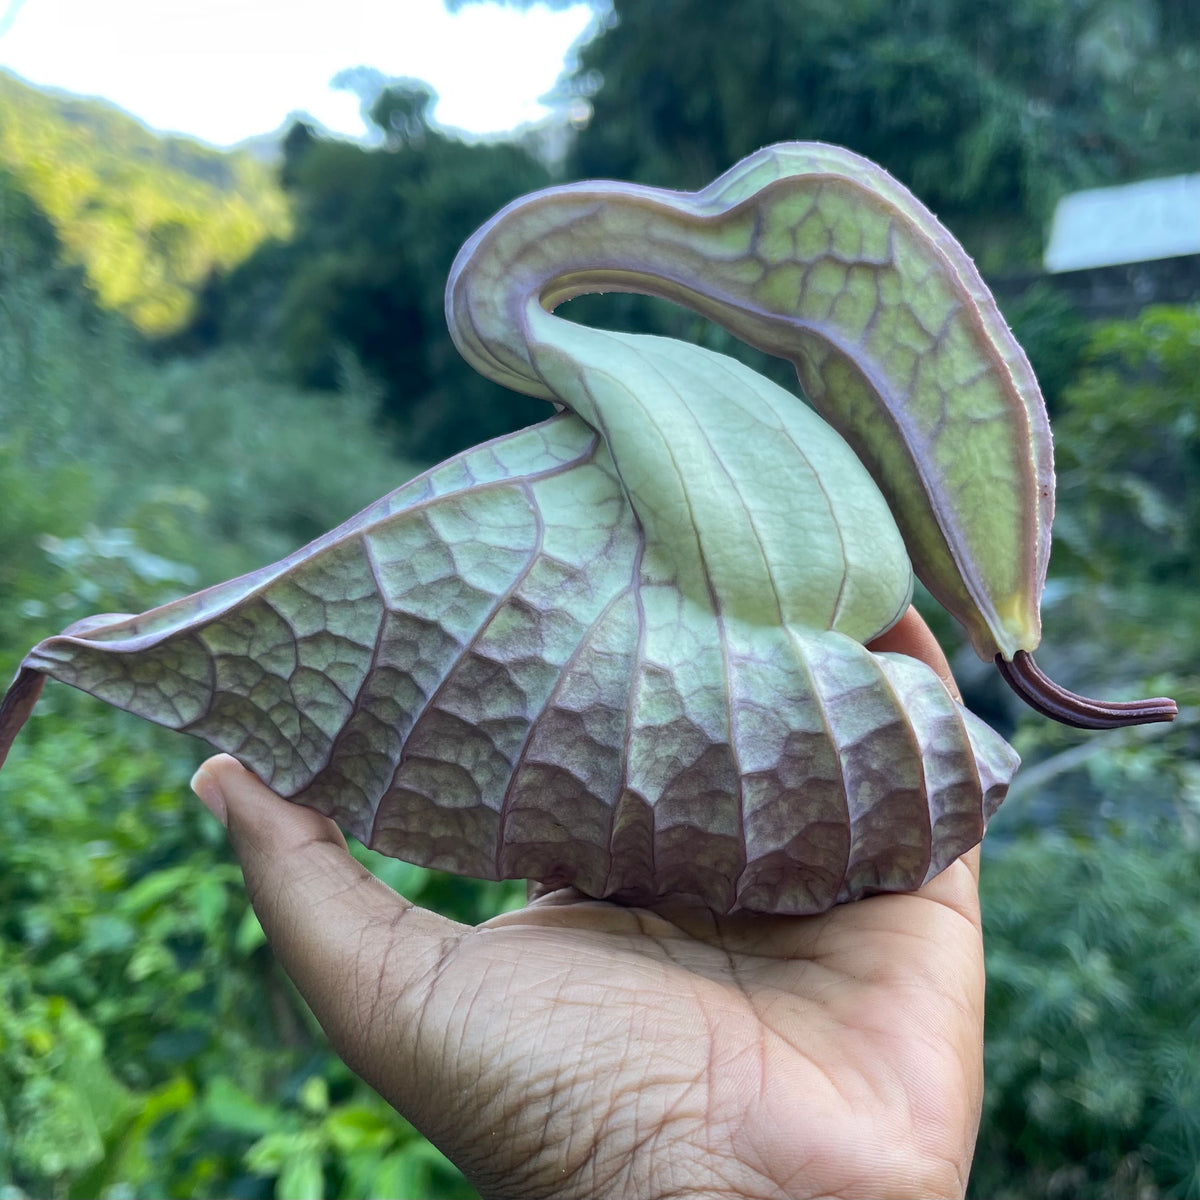 Jamaican Duck Flower - Powerful Mucus Detox